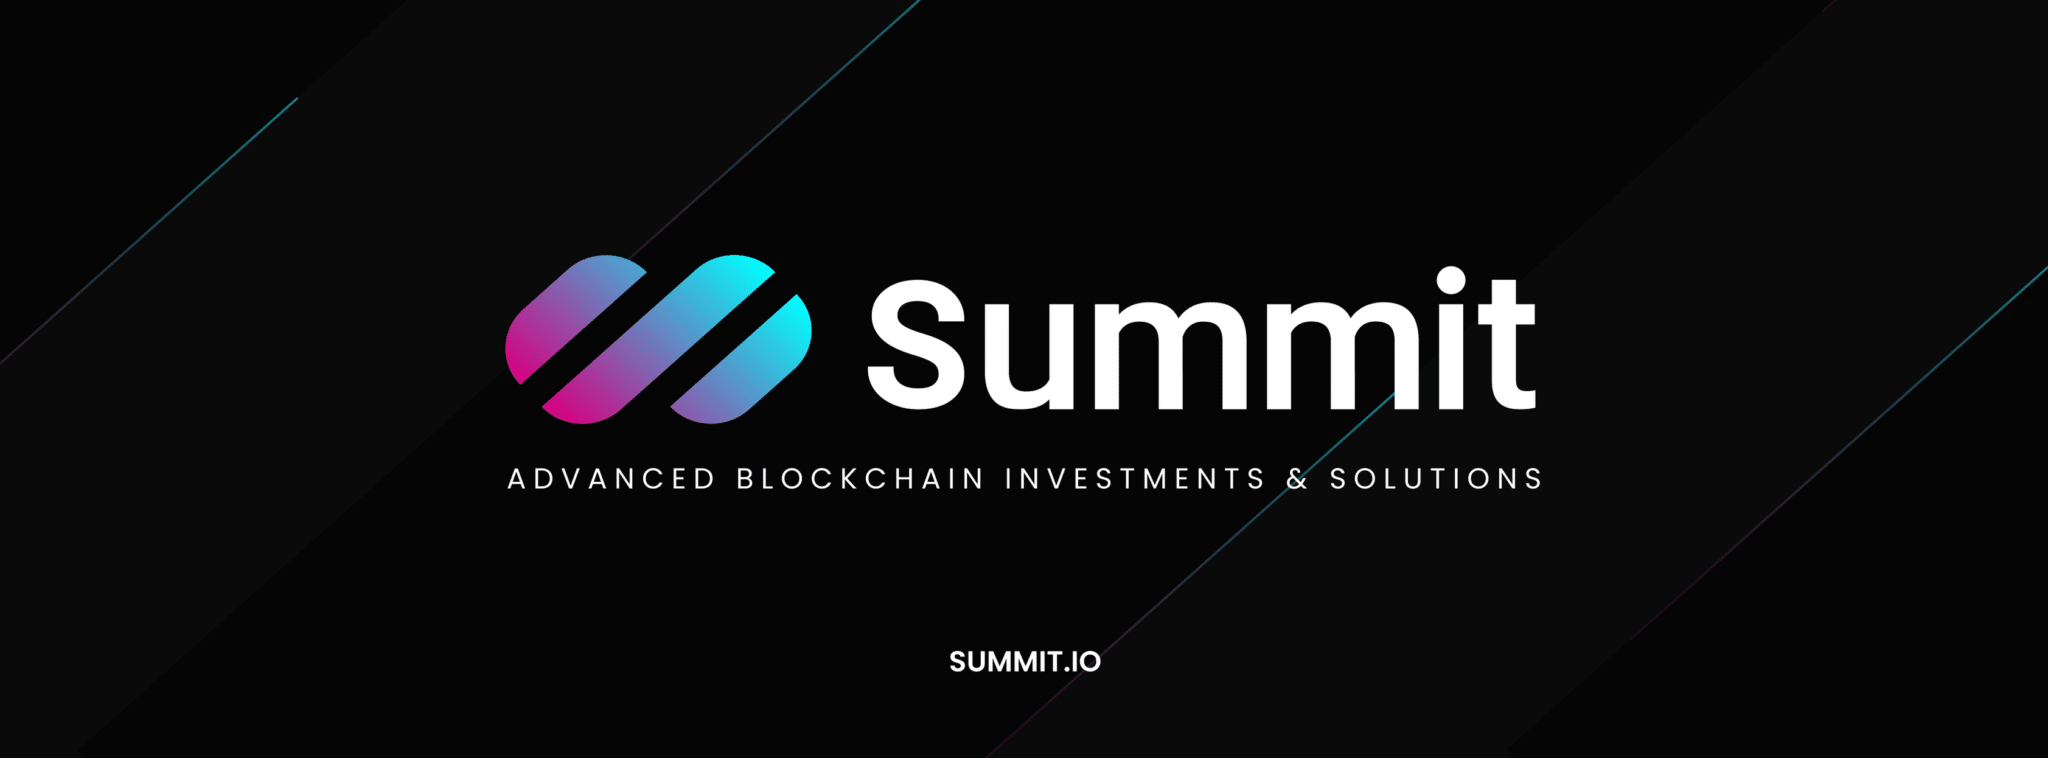 Logo Summit.io